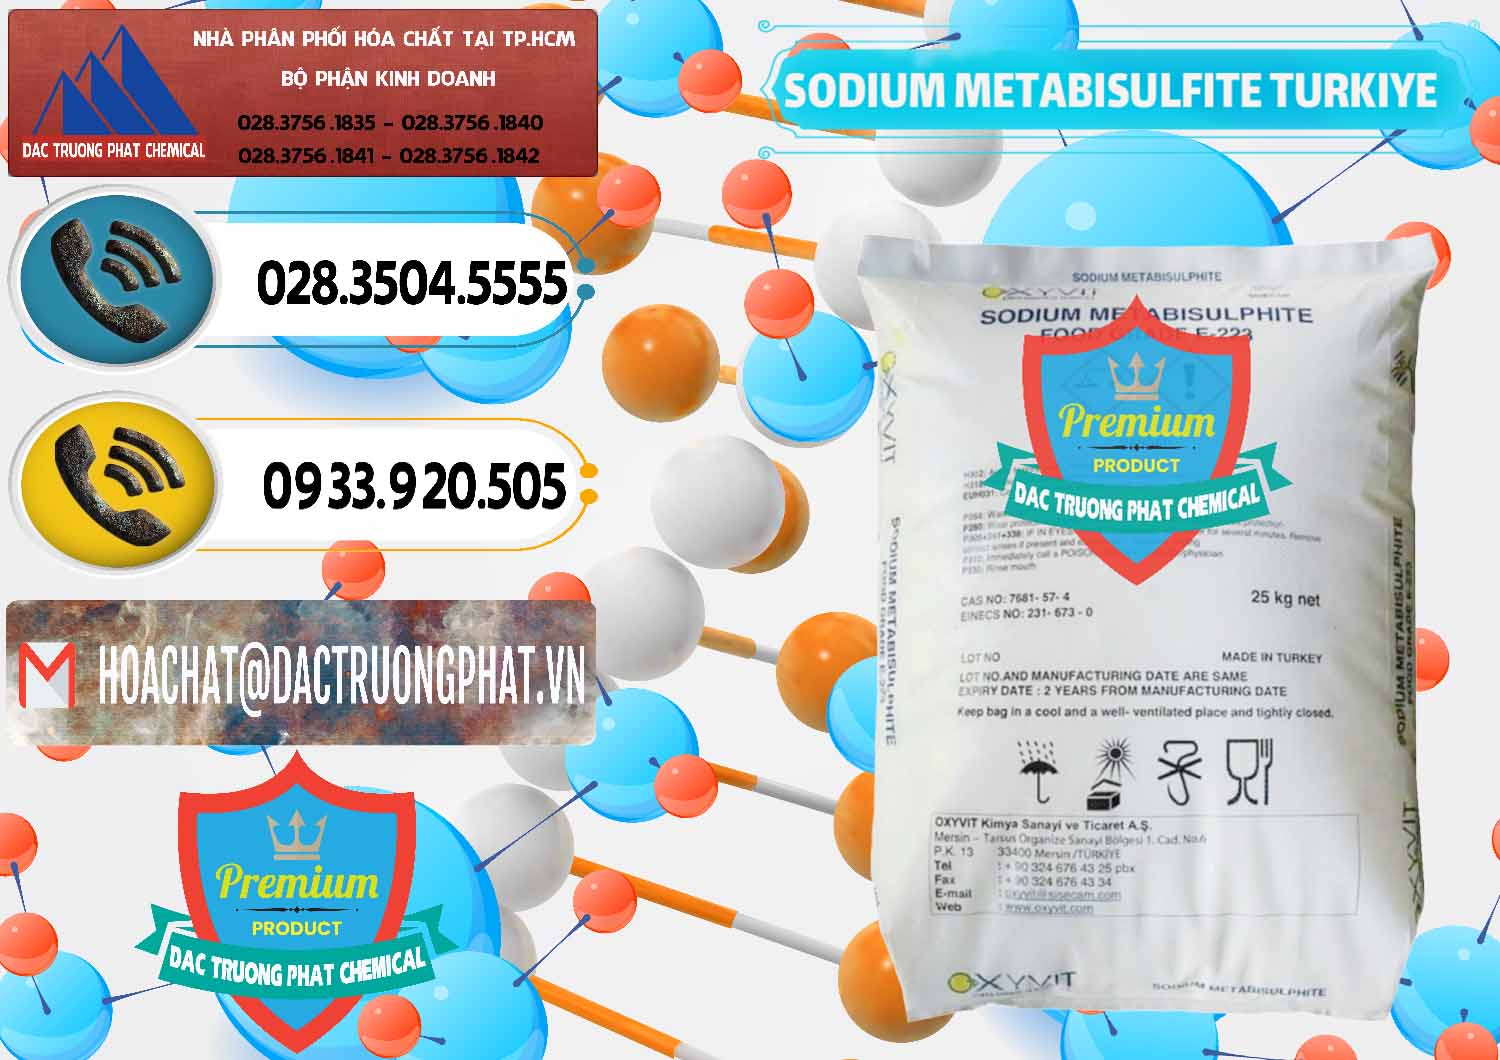 Nơi chuyên cung ứng - bán Sodium Metabisulfite - NA2S2O5 Food Grade E-223 Thổ Nhĩ Kỳ Turkey - 0413 - Nhà nhập khẩu - phân phối hóa chất tại TP.HCM - hoachatdetnhuom.vn